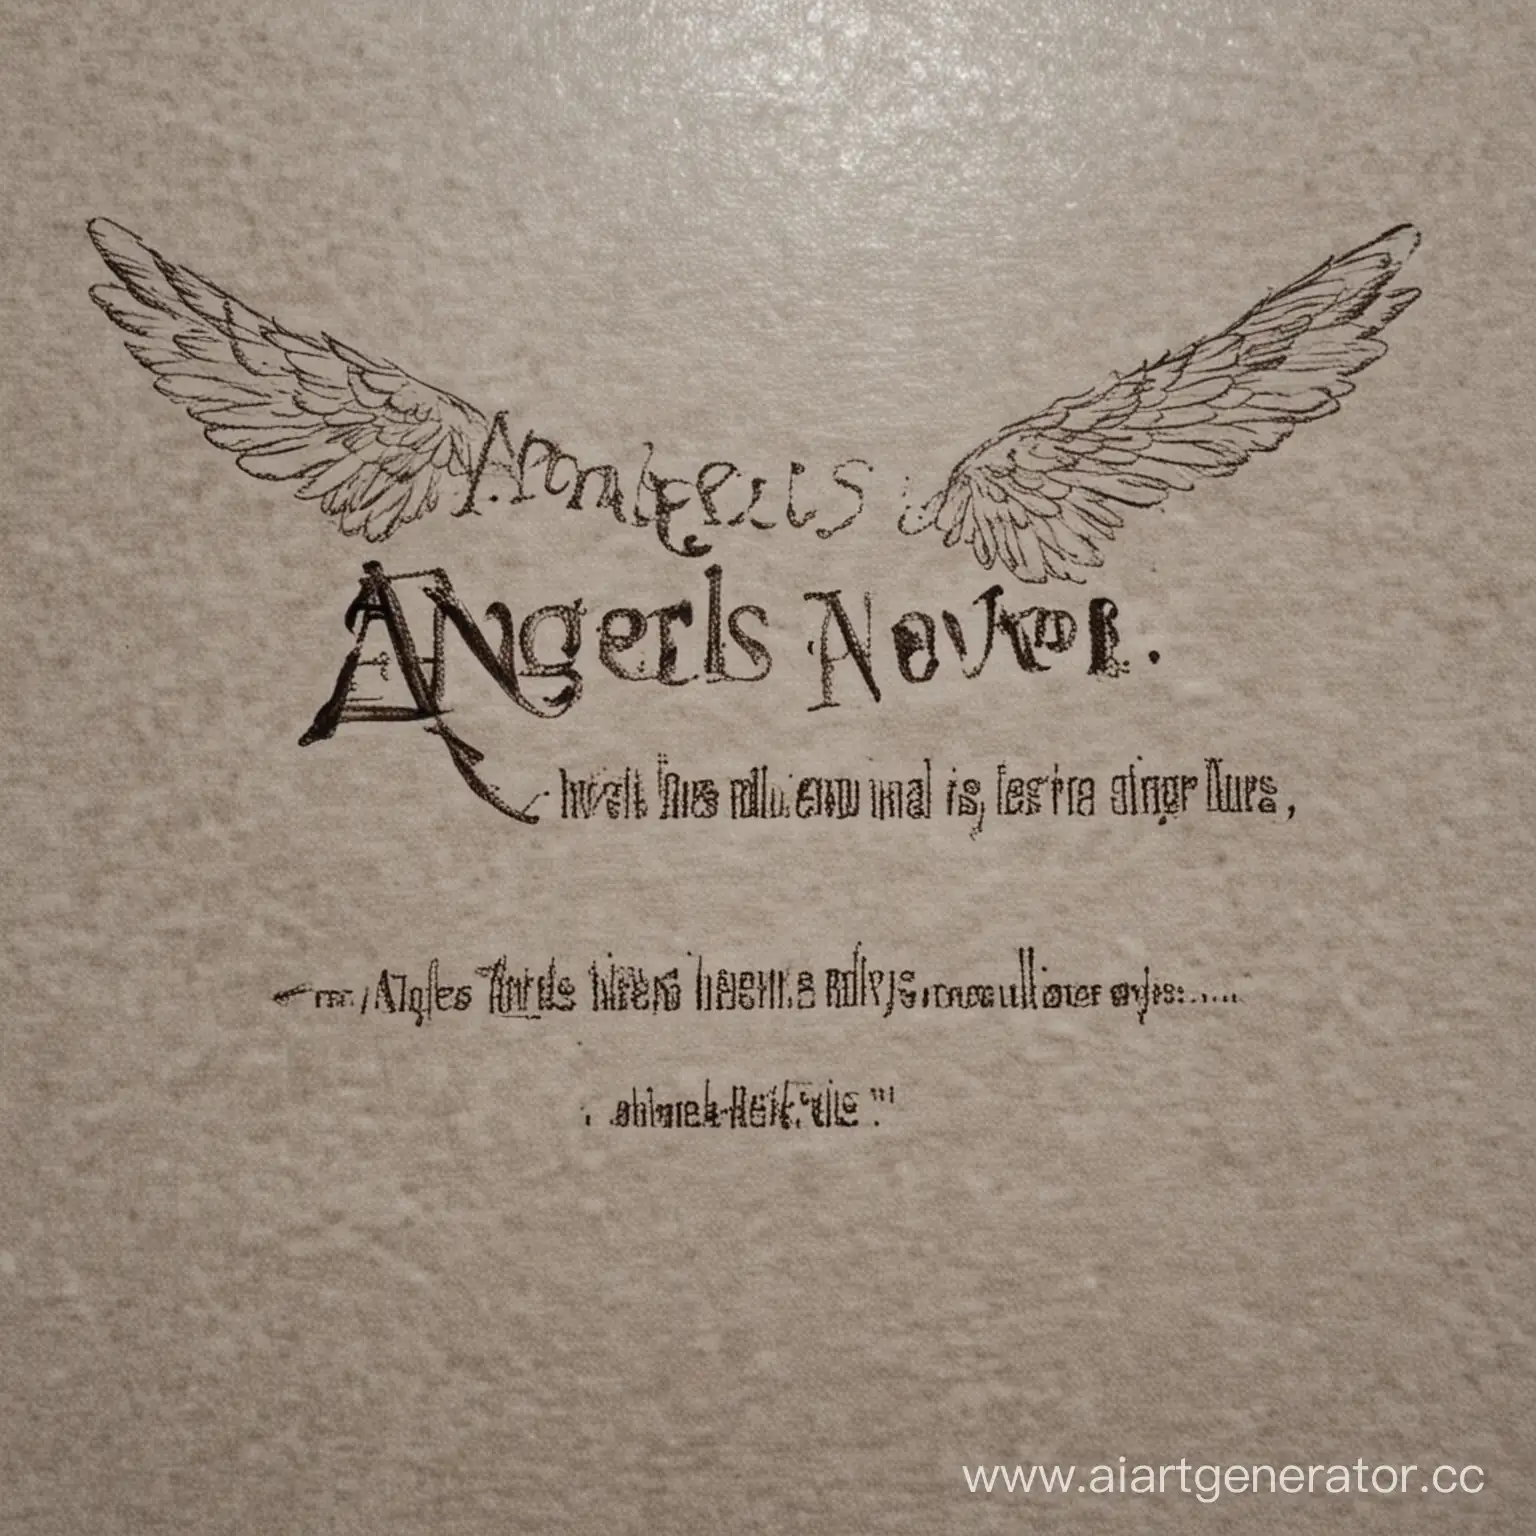 ANGELS NEVER DIE